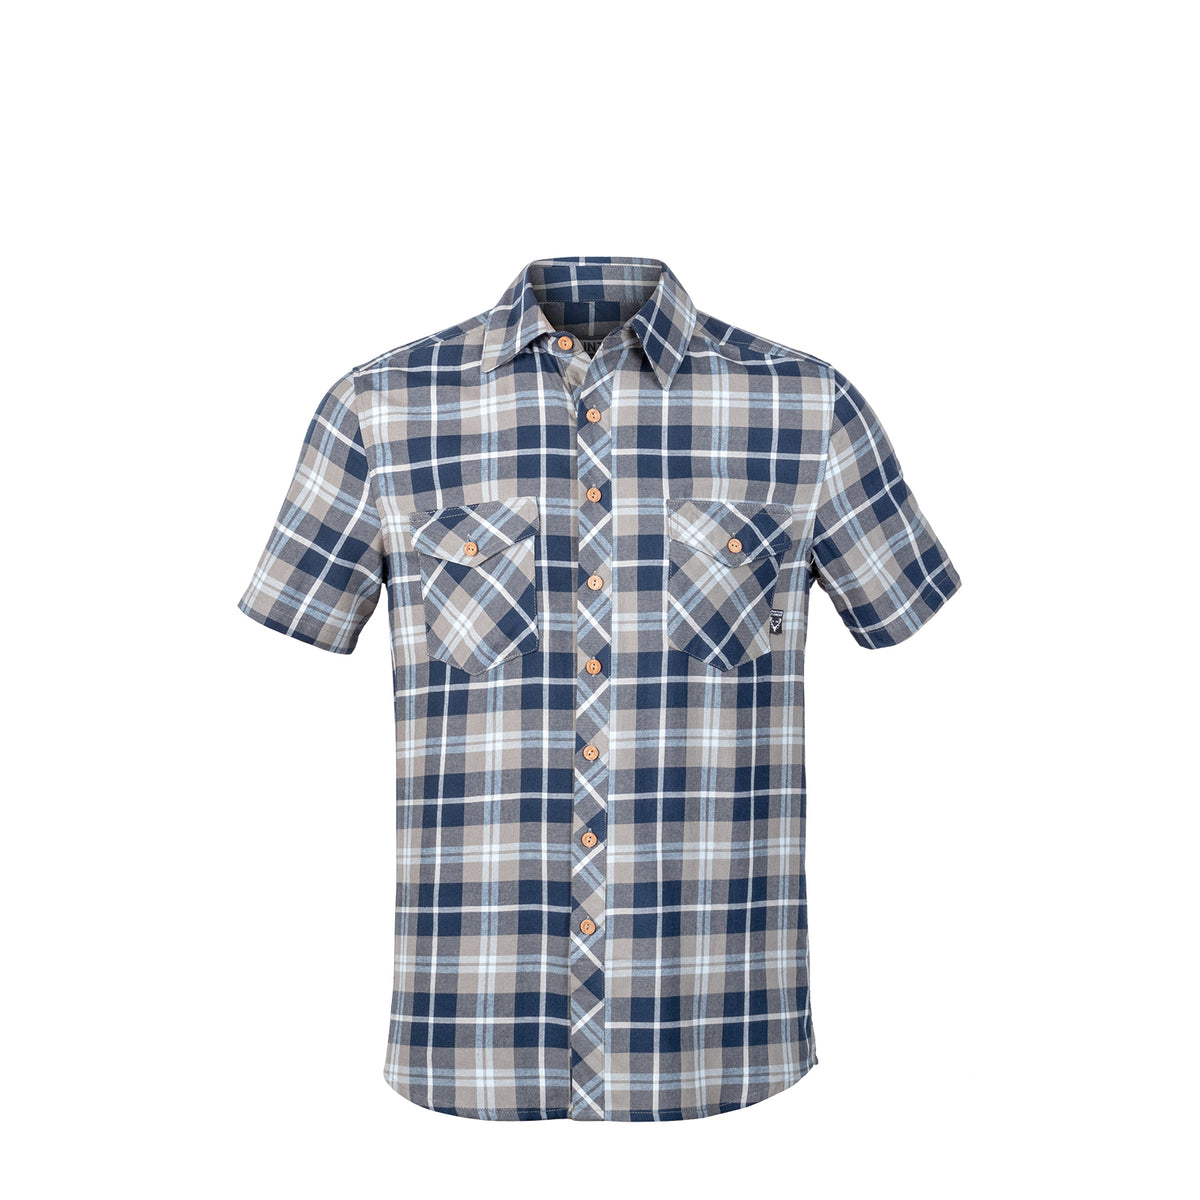 Hunters Element | Flint Shirt | Durable High-Wicking 100% Cotton ...